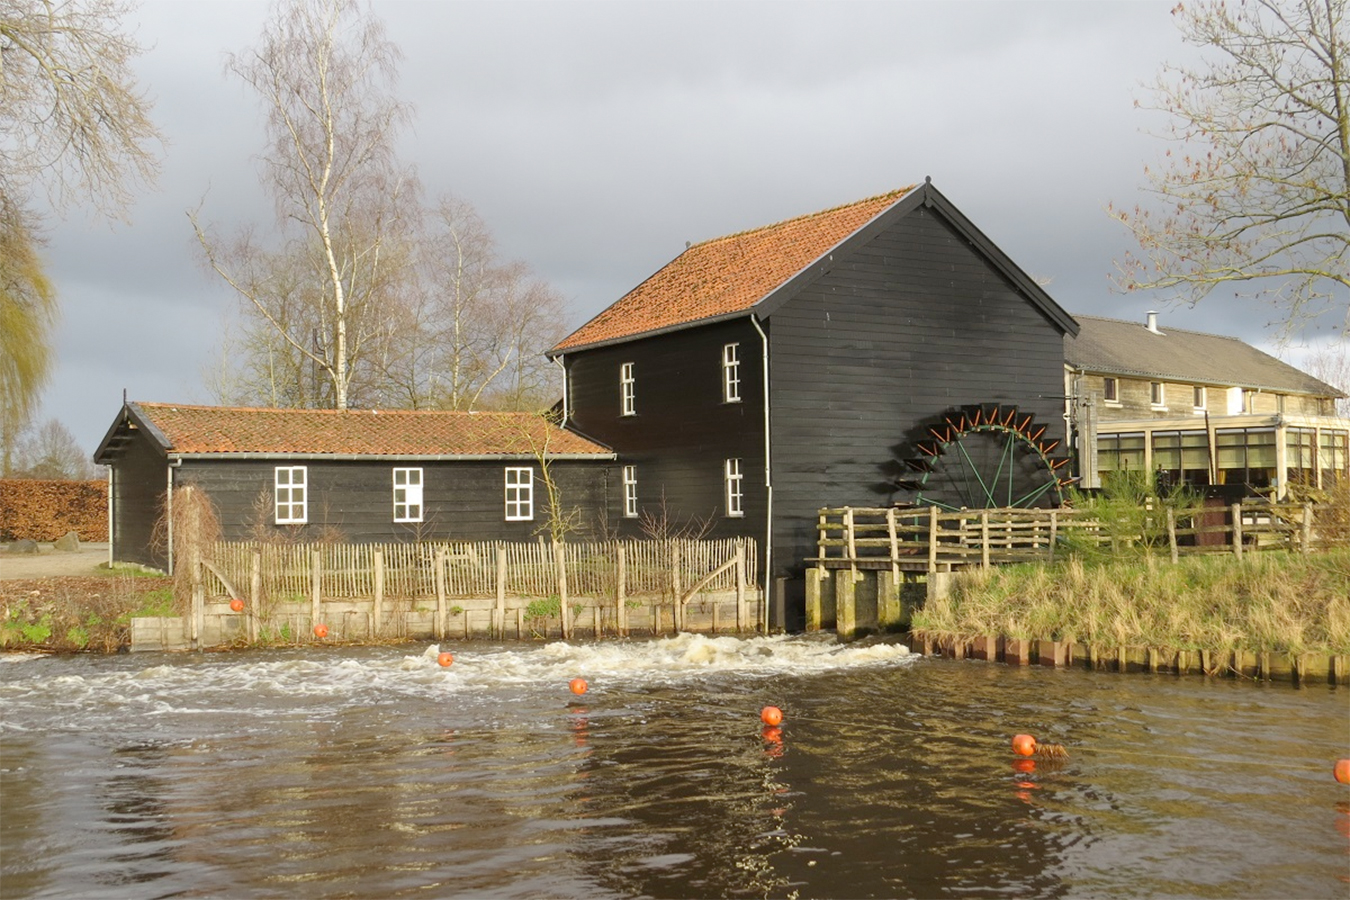 Foto van Venbergse Watermolen, Valkenswaard, Gerard Sturkenboom (17-3-2021)Geheel opgeknapt waterrad; geschilderd en nieuwe schoepen. | Database Nederlandse molens